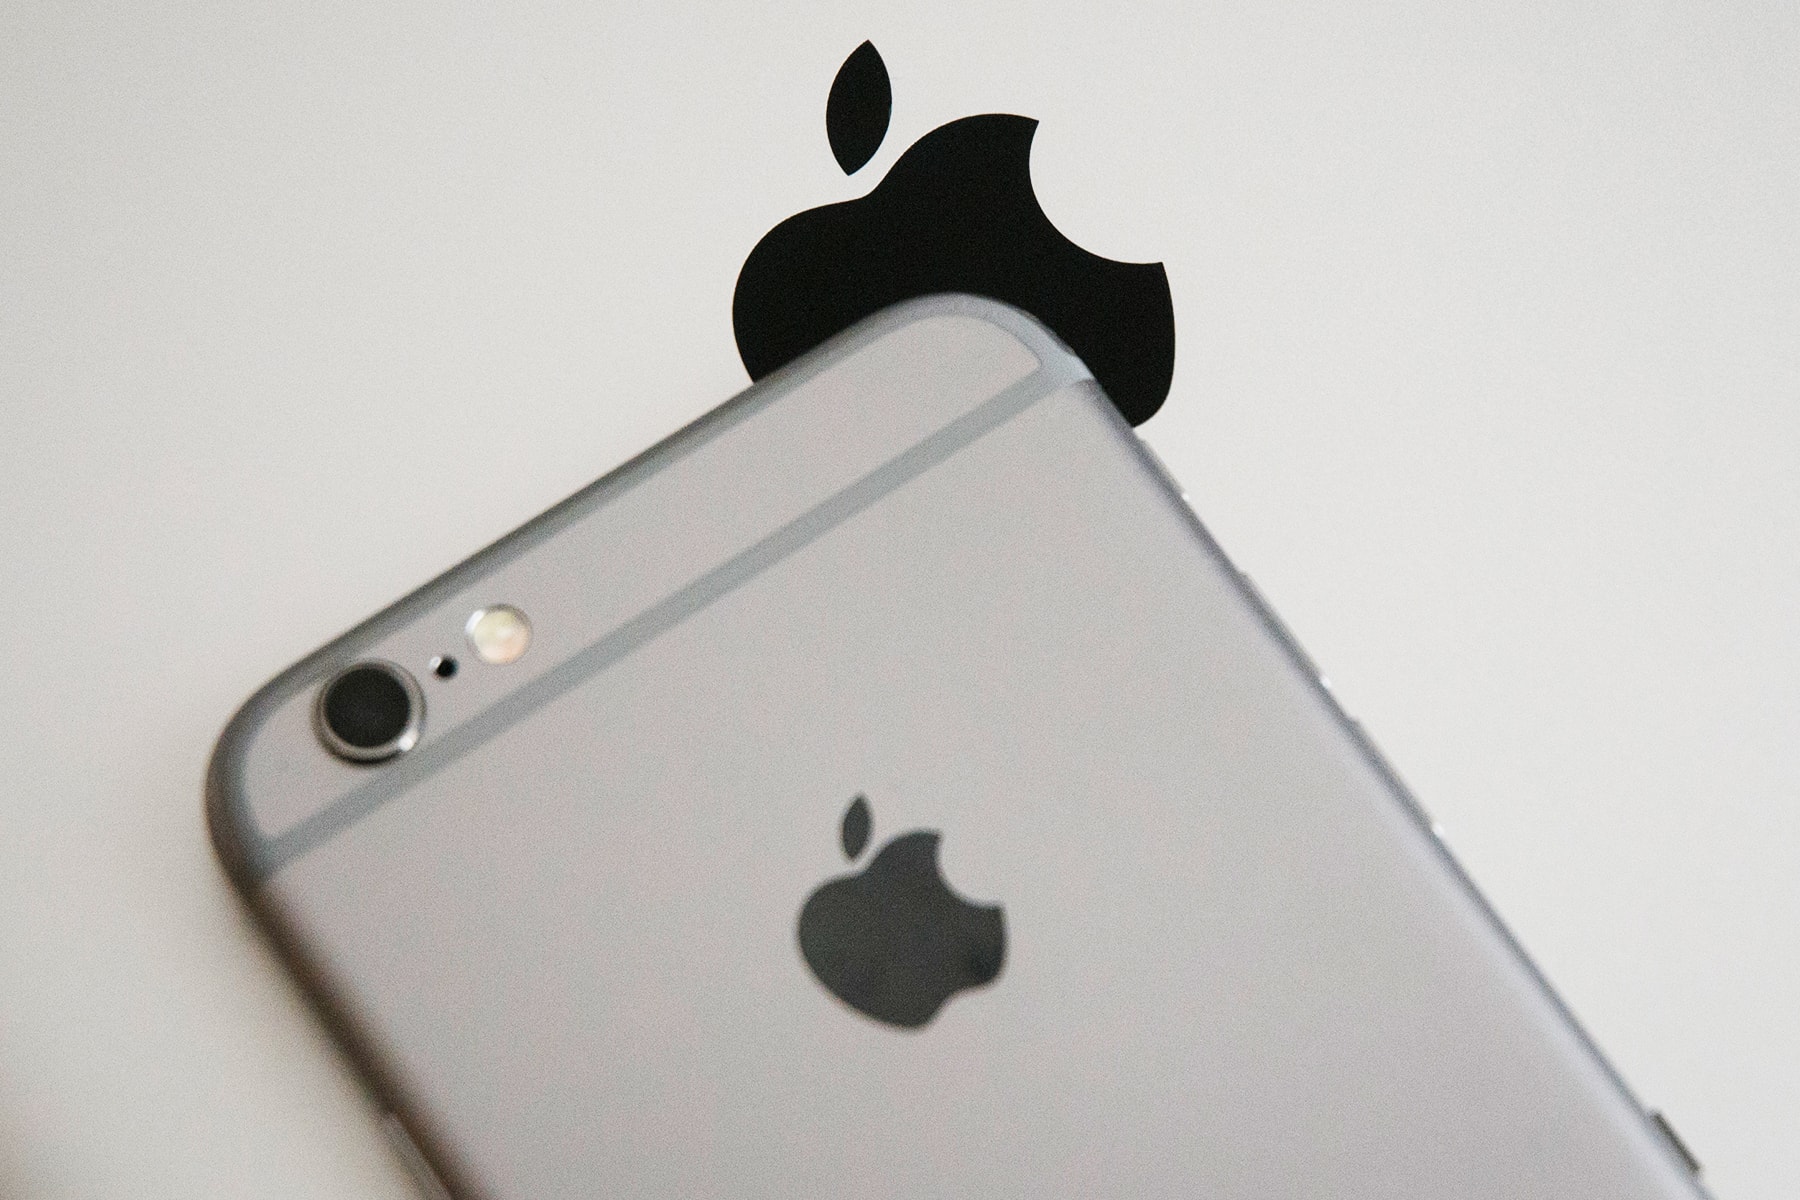 消息稱 iOS 15 將停止支援 Apple iPhone 6s 和 iPhone SE